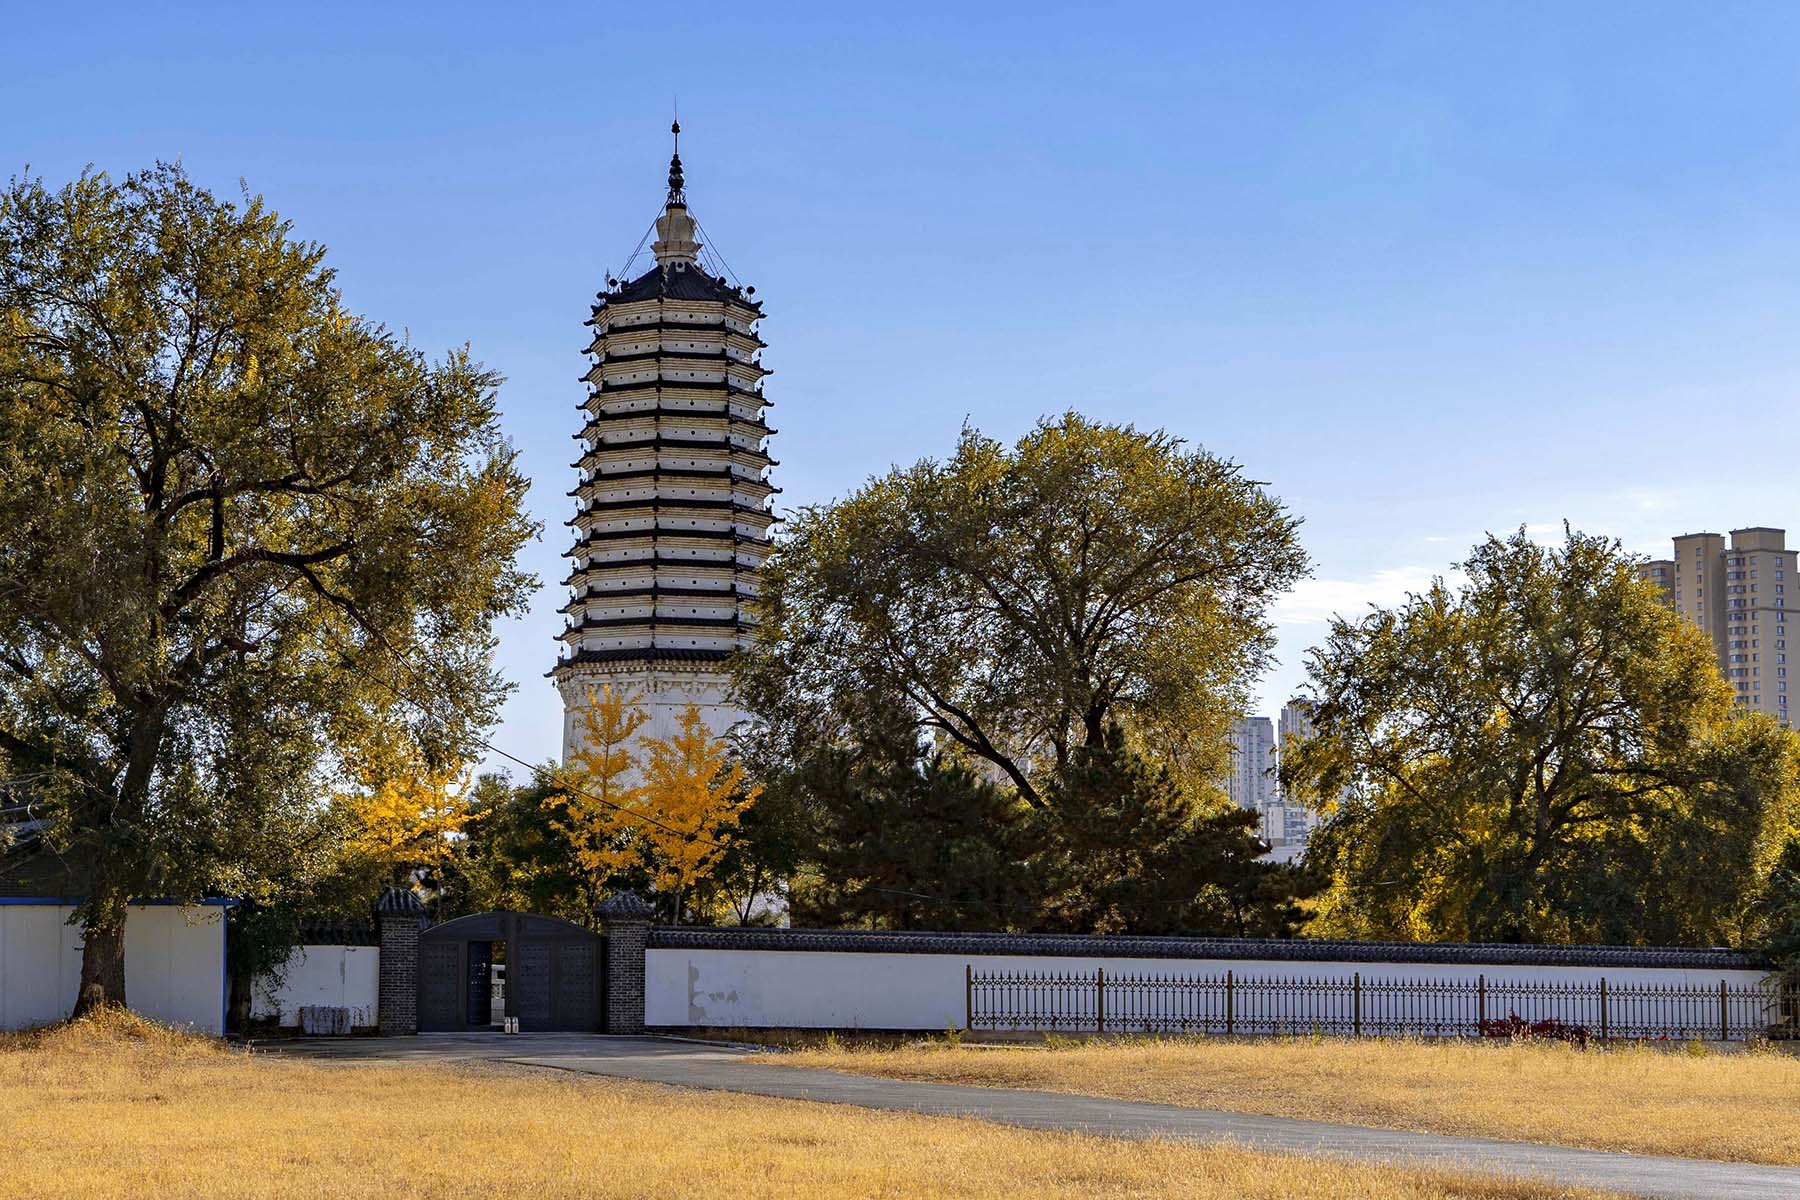 寺公园内的秋色很美盛京碑林公园大门沈阳(净光无垢舍利塔)始建于唐代